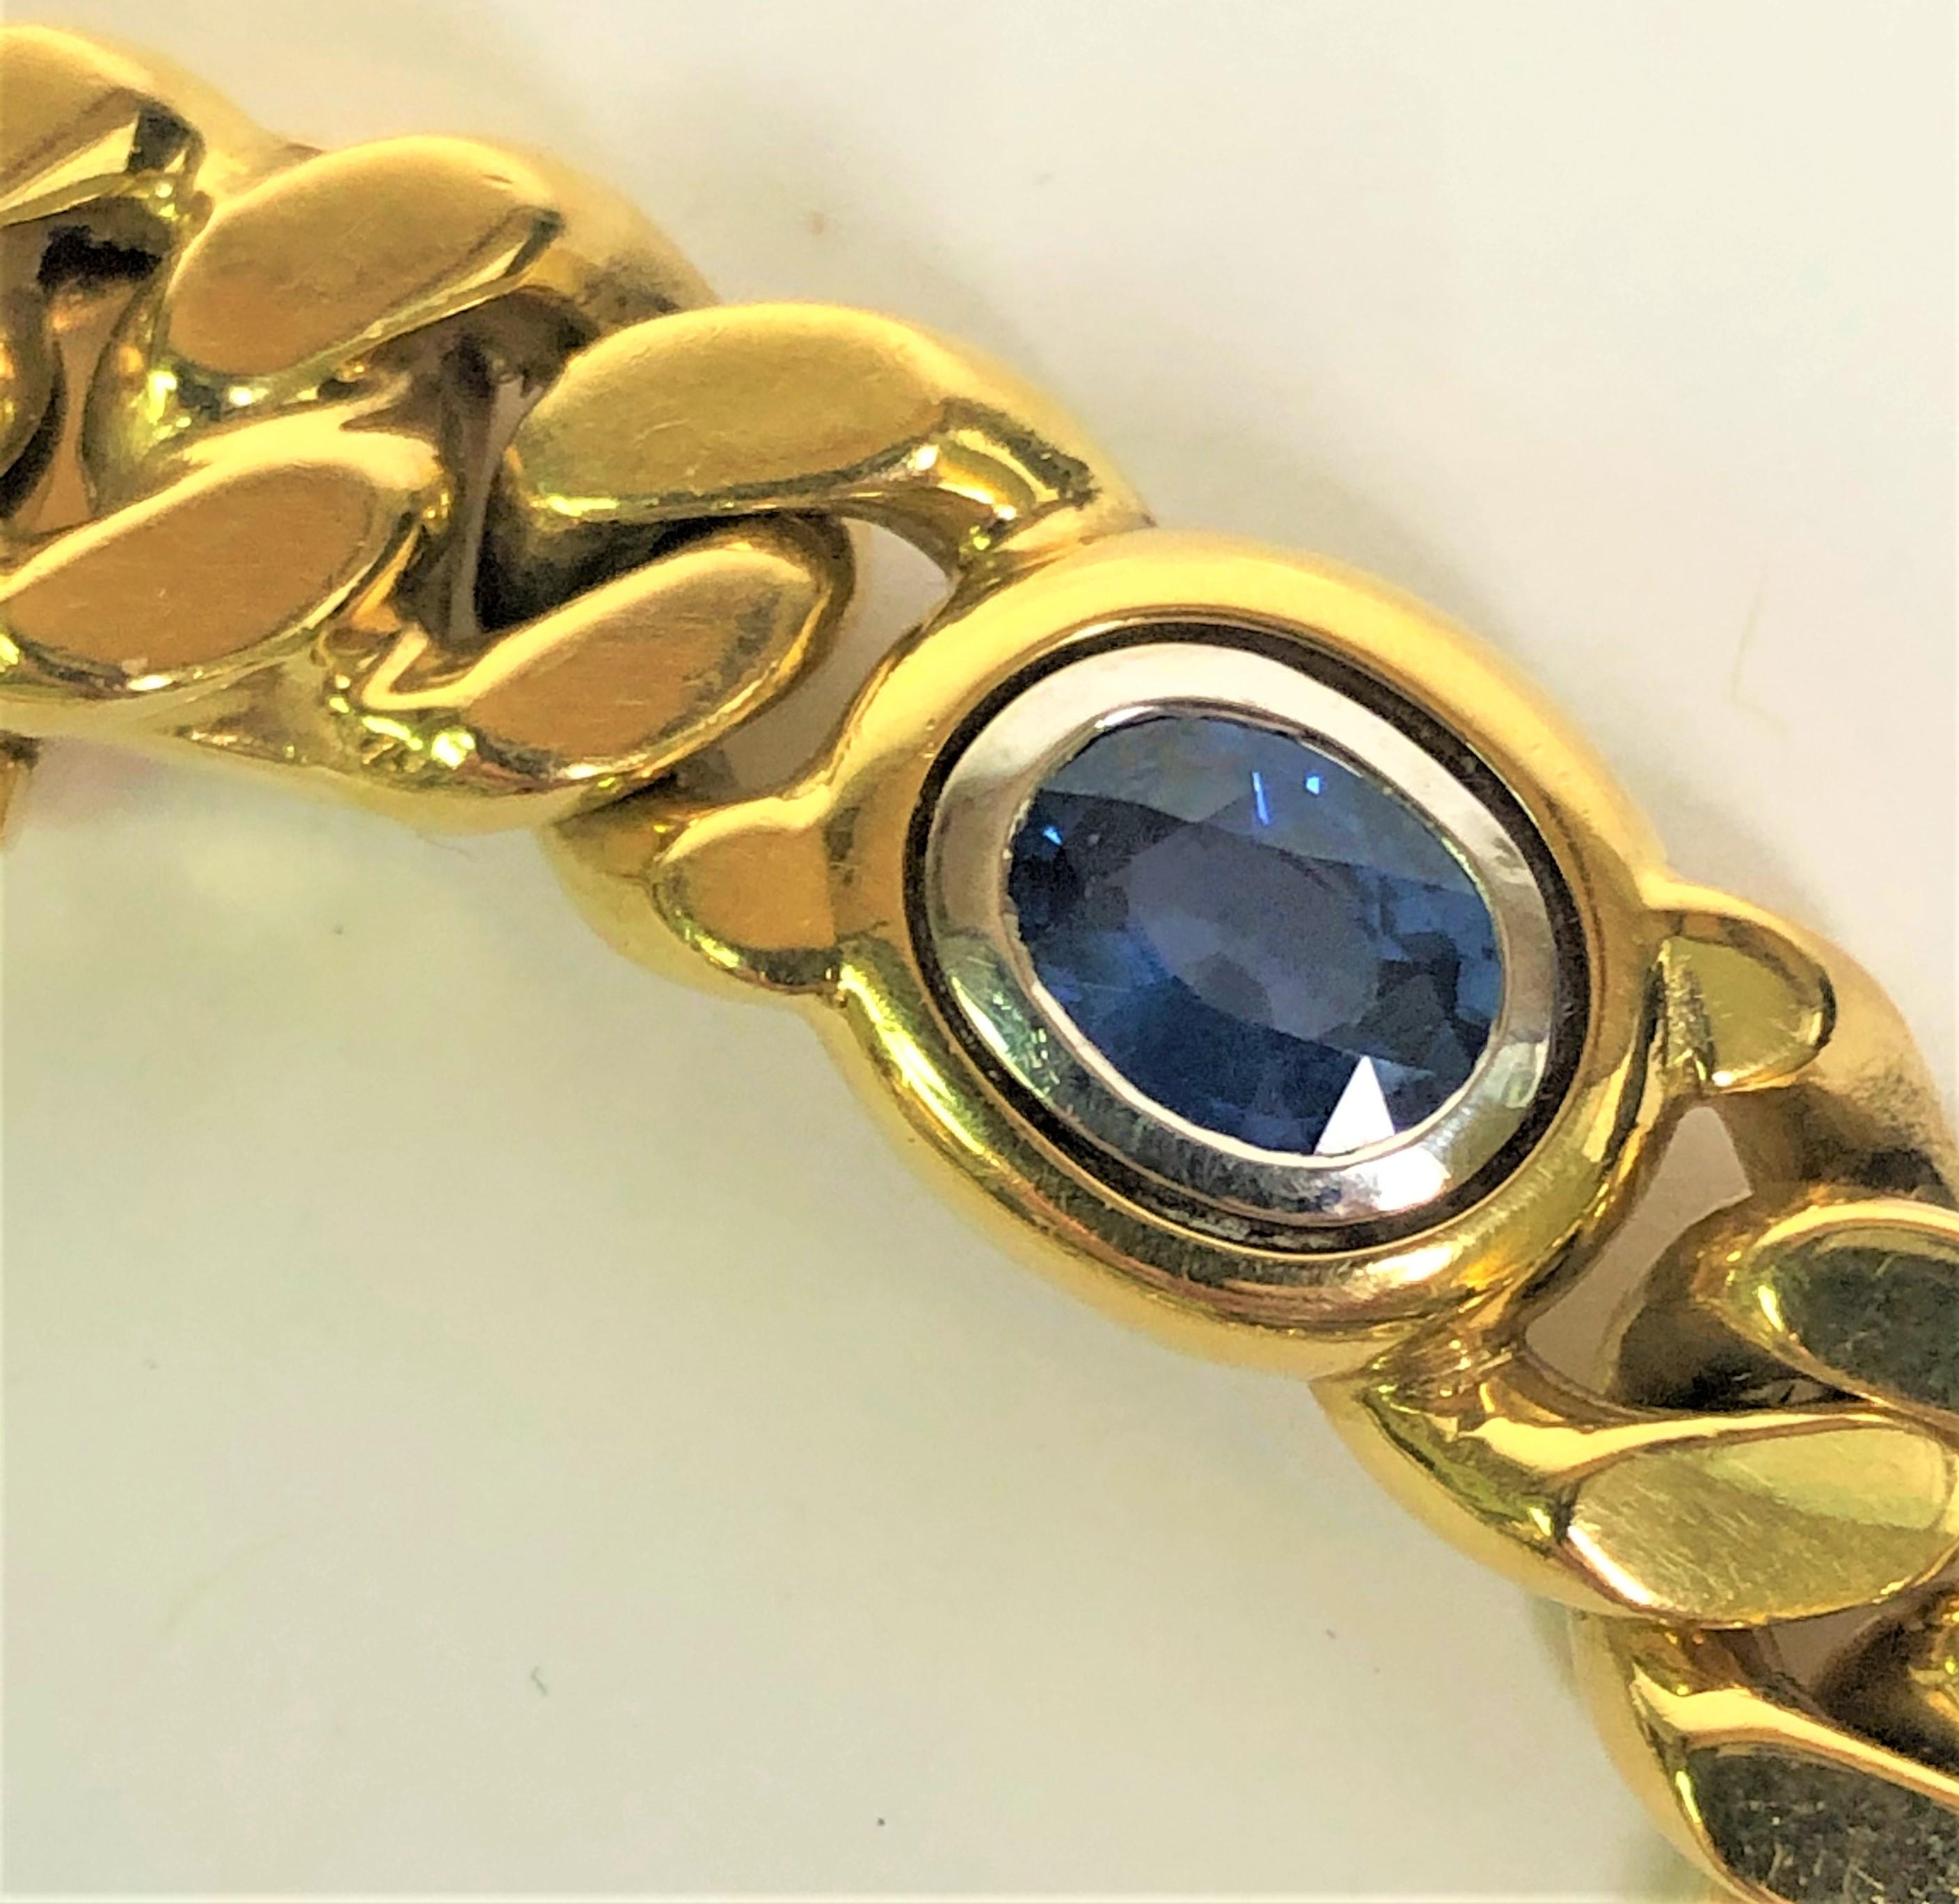 Conçu par le designer Louis Fiessler, ce bracelet est un classique.
Chaîne en forme de boucle polie jaune 18 carats avec cinq pierres ovales serties en chaton.
Deux rubis, deux saphirs et une émeraude, chacun d'environ 6 mm x 5 mm.
Environ 7,75